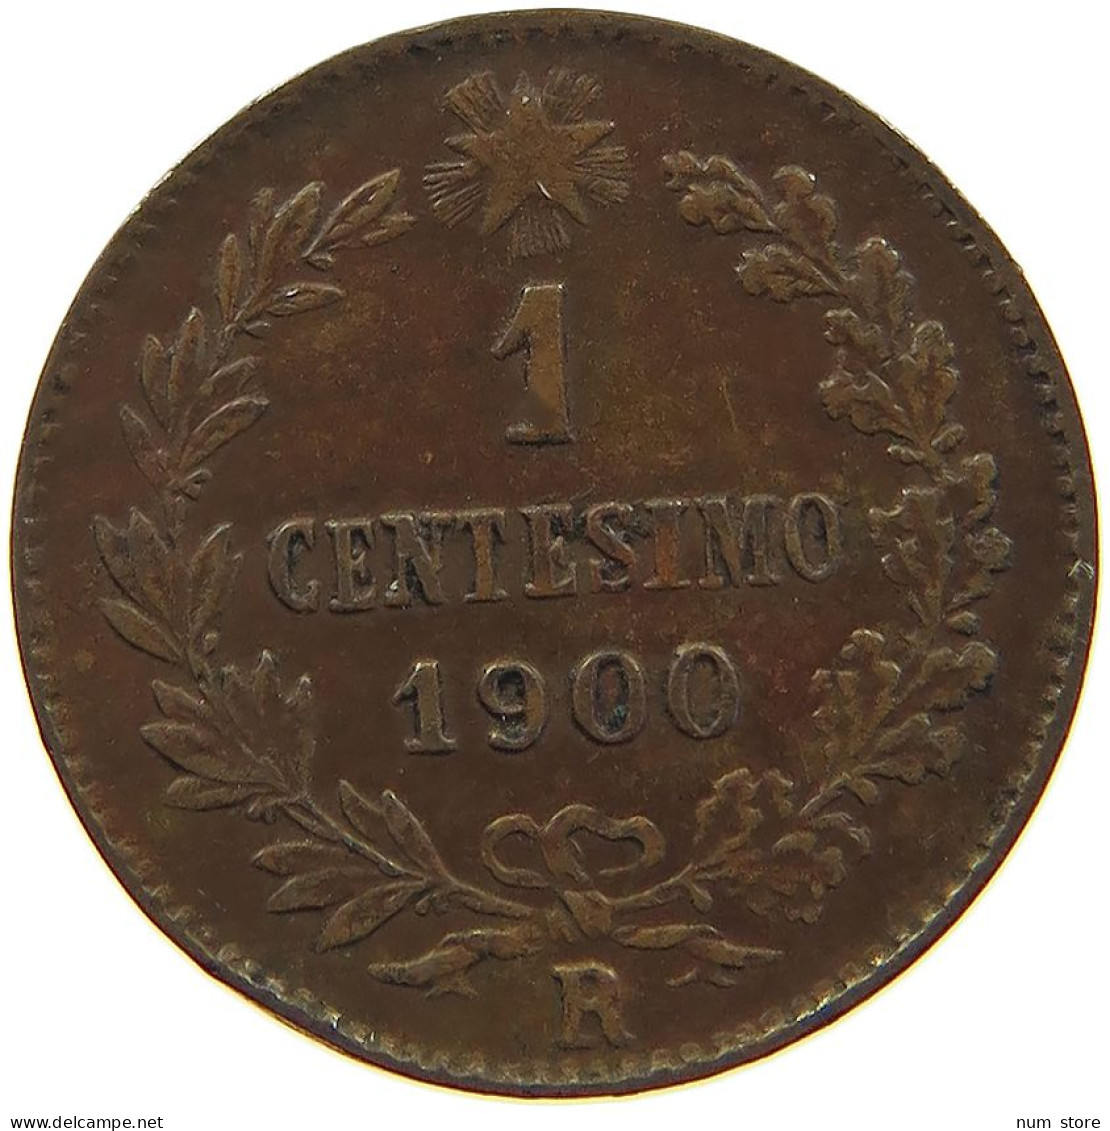 ITALY CENTESIMO 1900 R UMBERTO I. 1878-1900 #c019 0423 - 1878-1900 : Umberto I